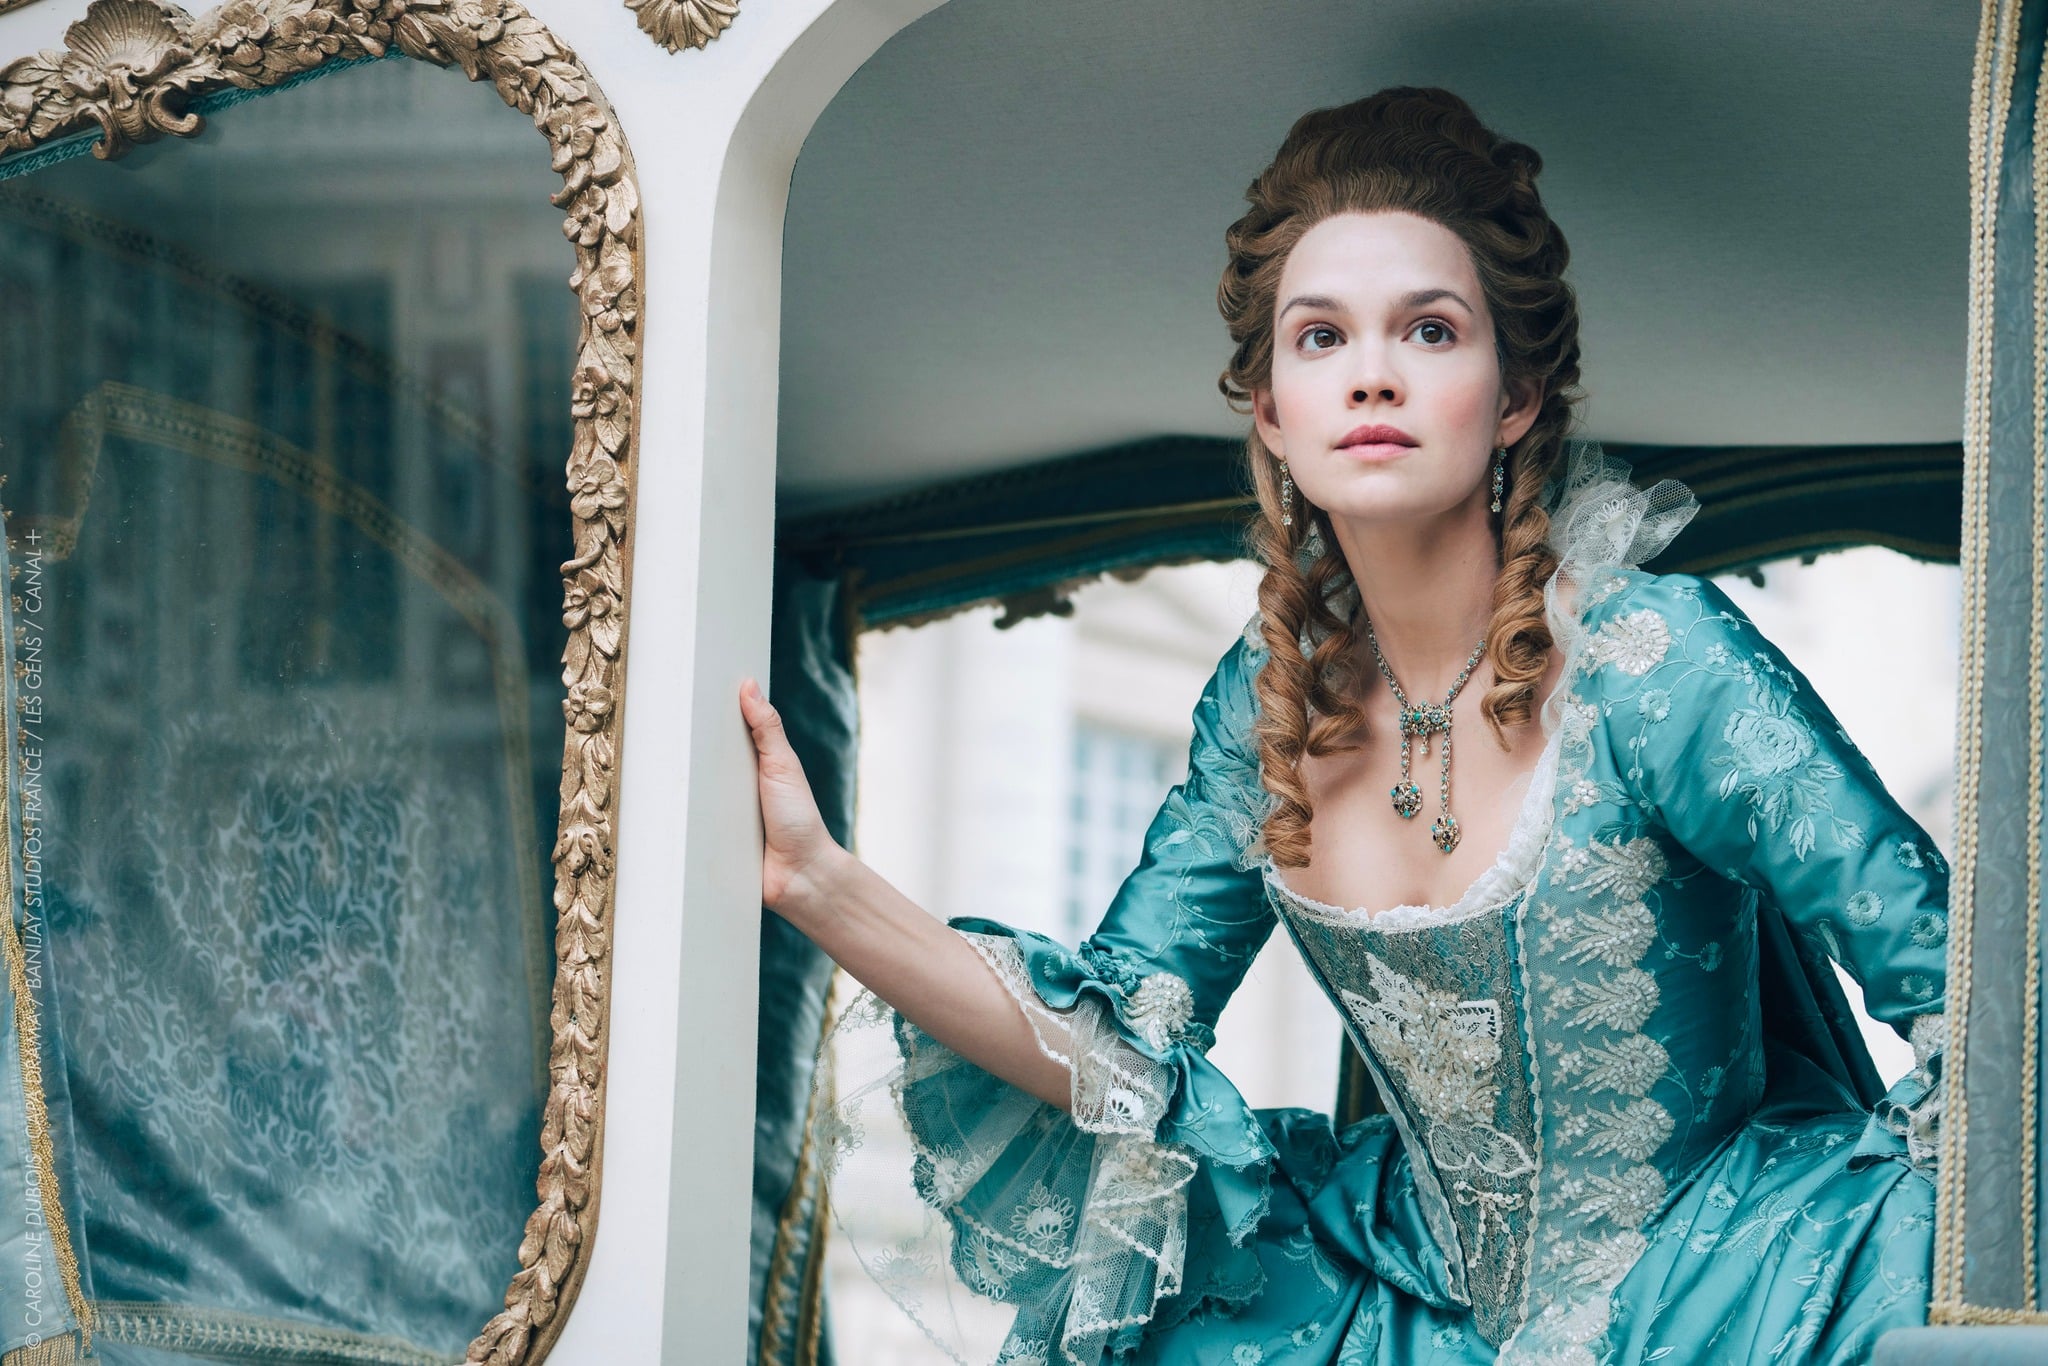 La Serie sur Marie-Antoinette arrive bientot avec Emilia Schule dans le role principal